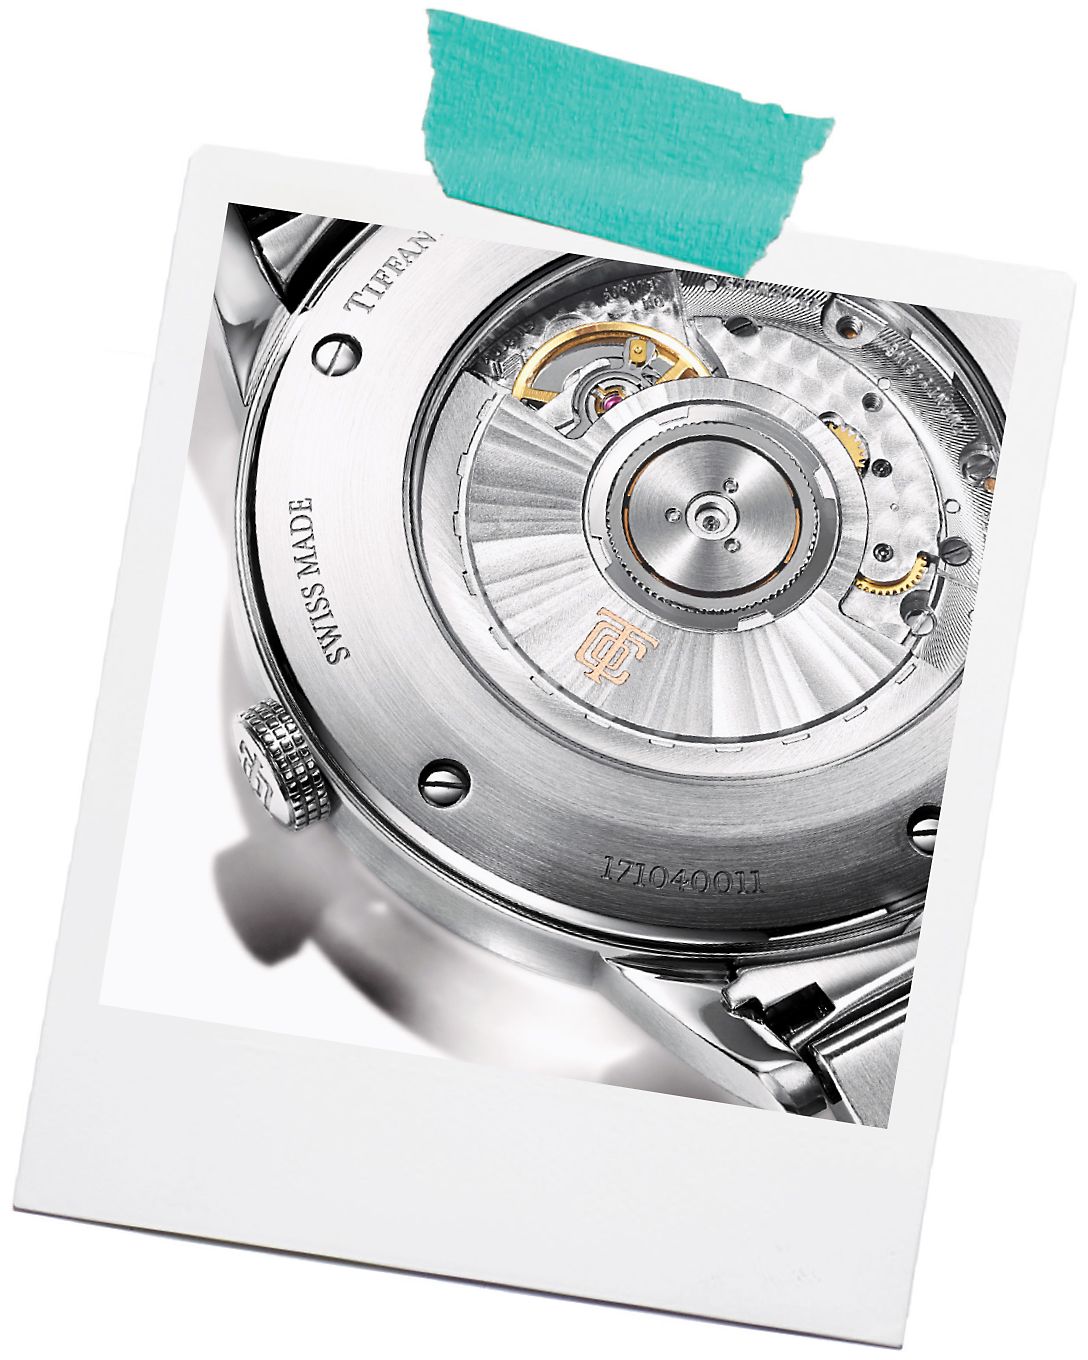 Scopri come effettuare la manutenzione del tuo orologio Tiffany & Co.